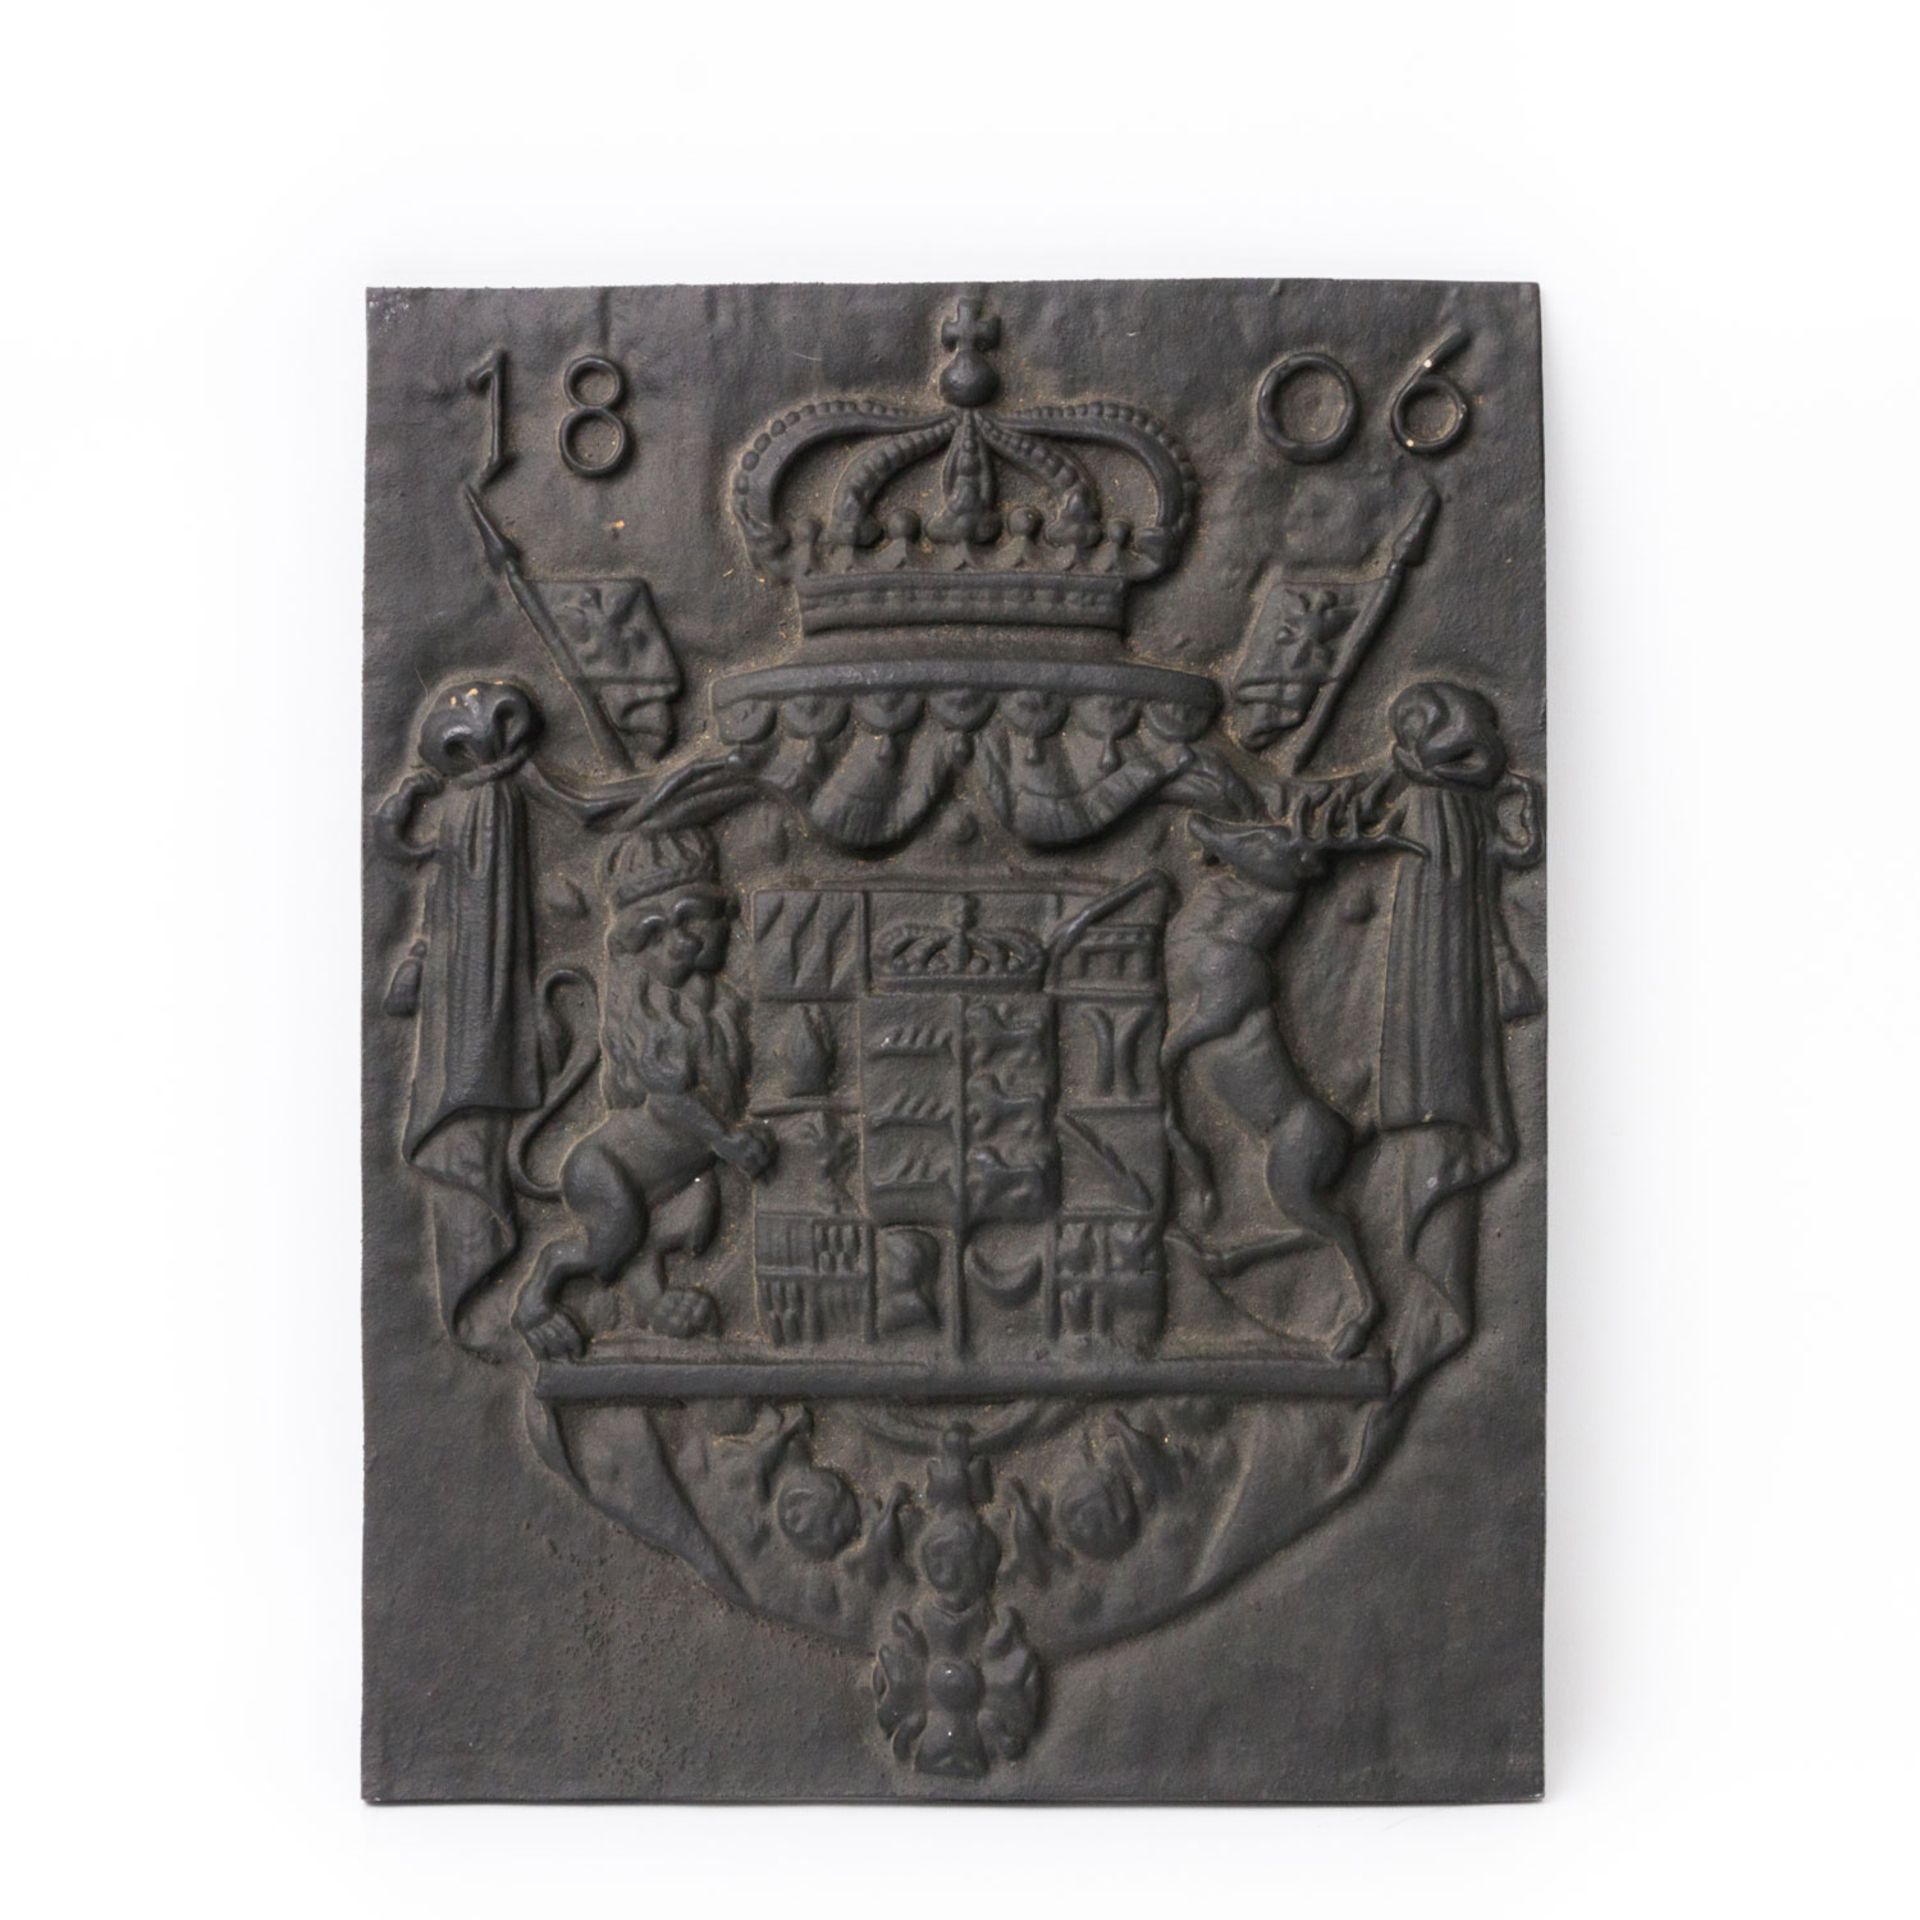 Gusseiserne Offenplatte - Kaminbild mit Wappen Württembergs, Aufschrift: 1806, Maße: 41 x 54 cm,